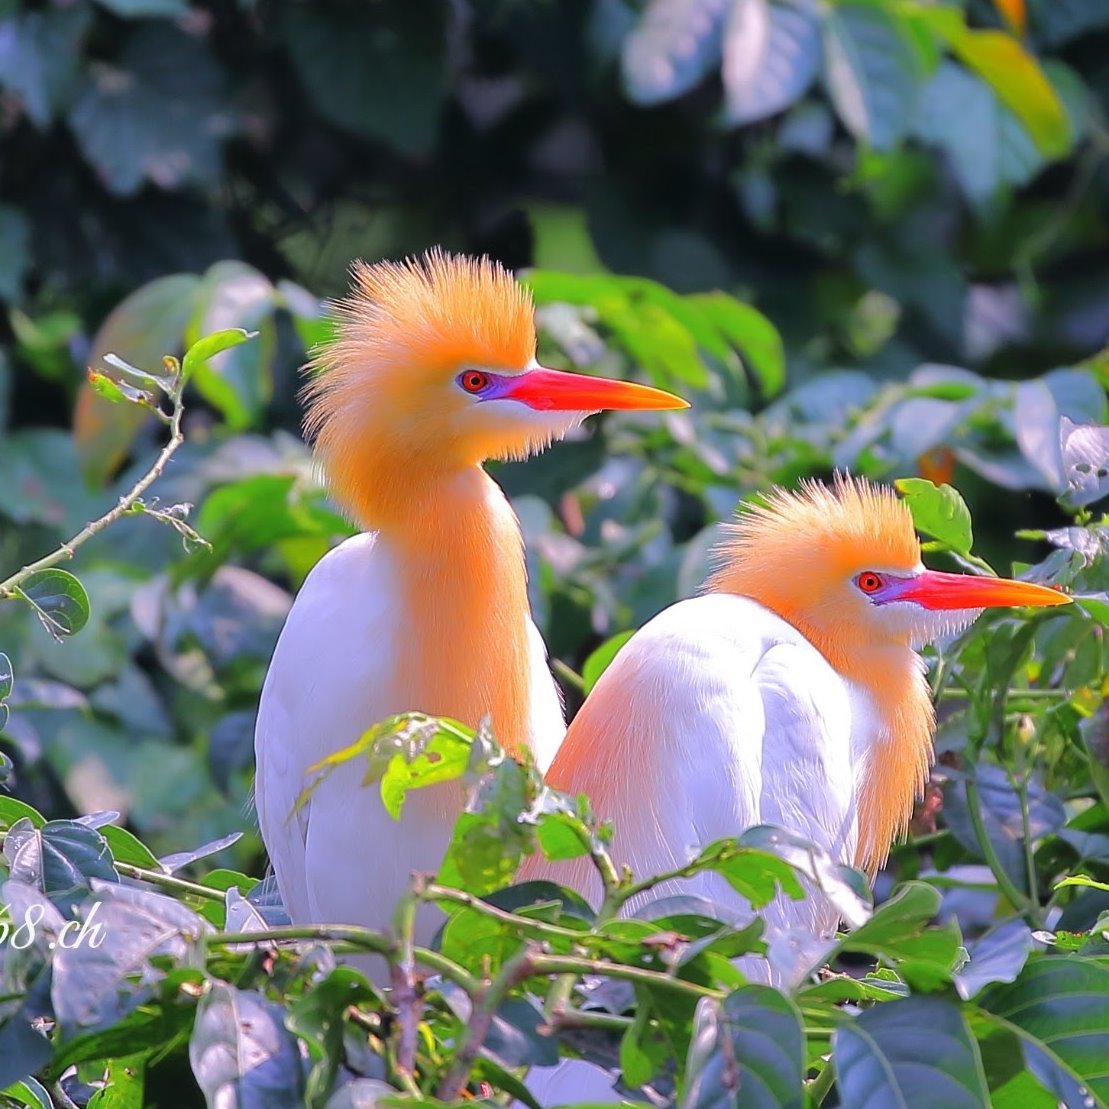 あれ見てみ、すげぇモヒカンがいるぜ、、、
#野鳥 #bird #BirdsPhotography #nature #NatureBeauty #台灣 #大安森林公園 https://t.co/bsPwLjpBVM